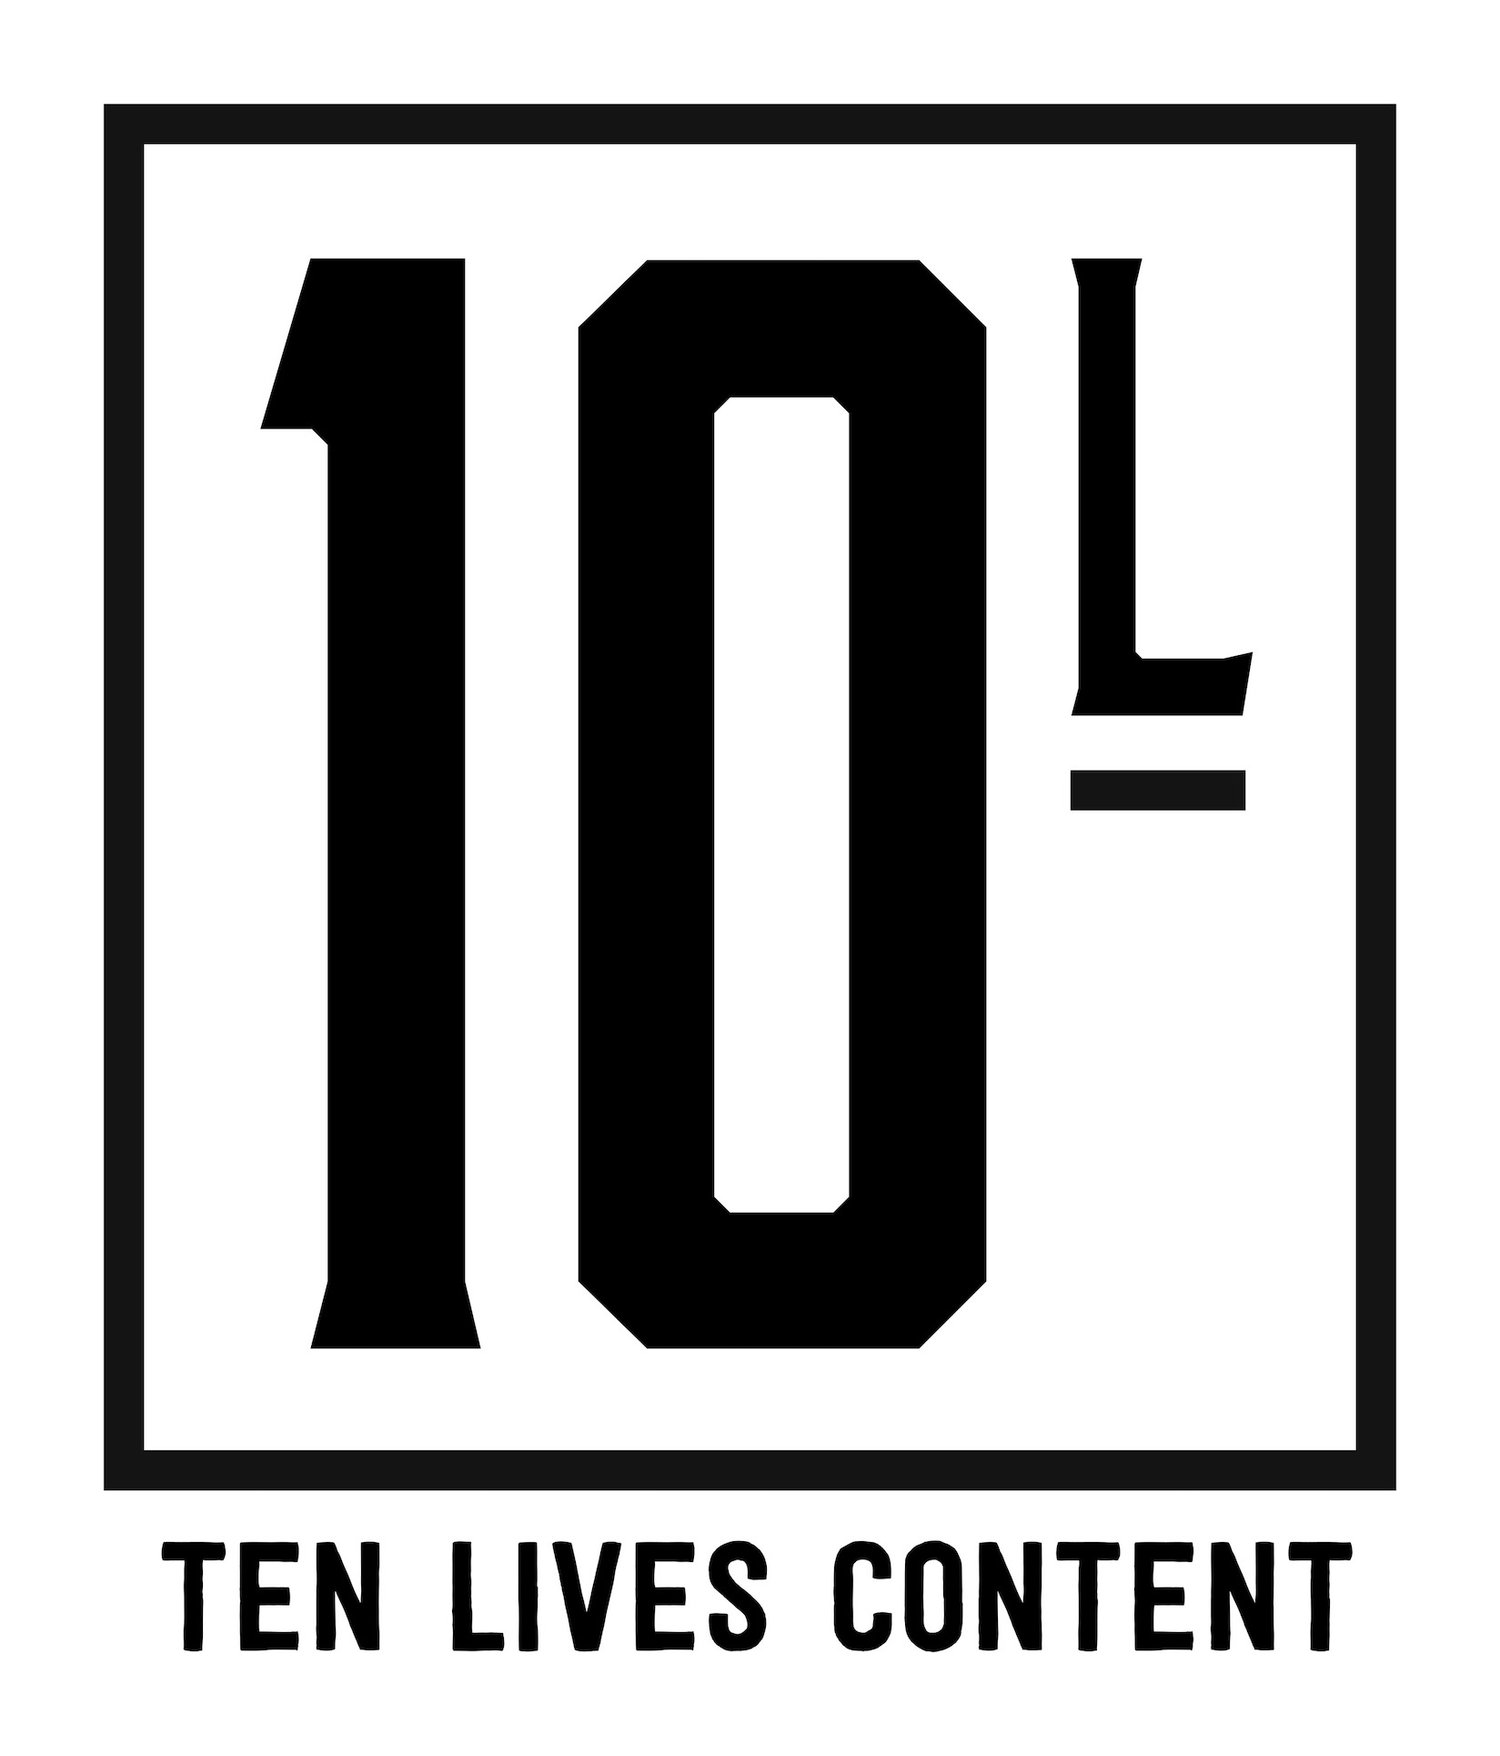 10 LIVES CONTENT